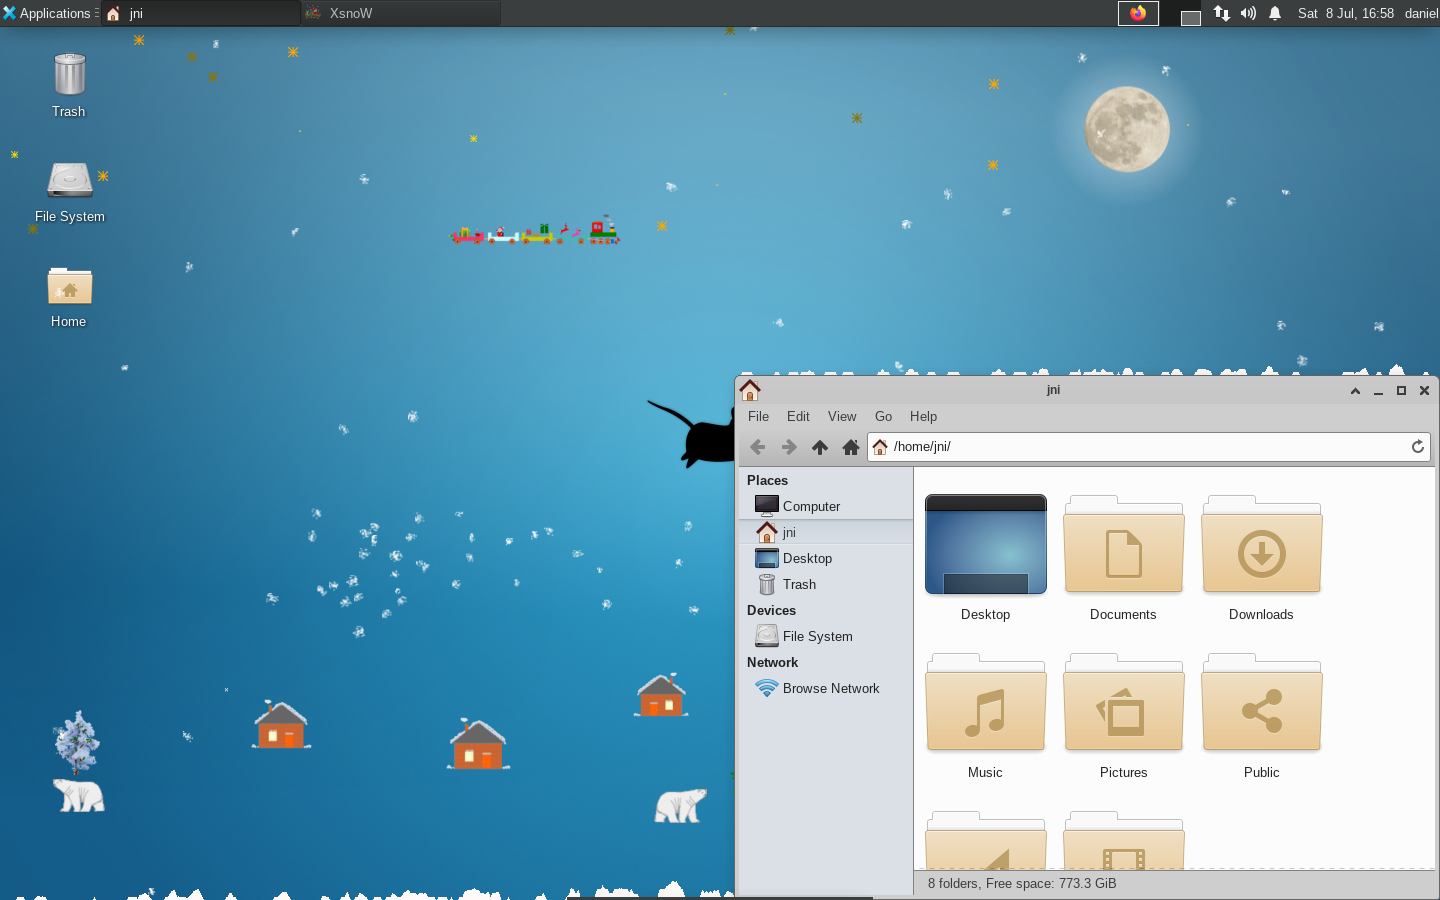 Here is screenshot of my Slackware linux